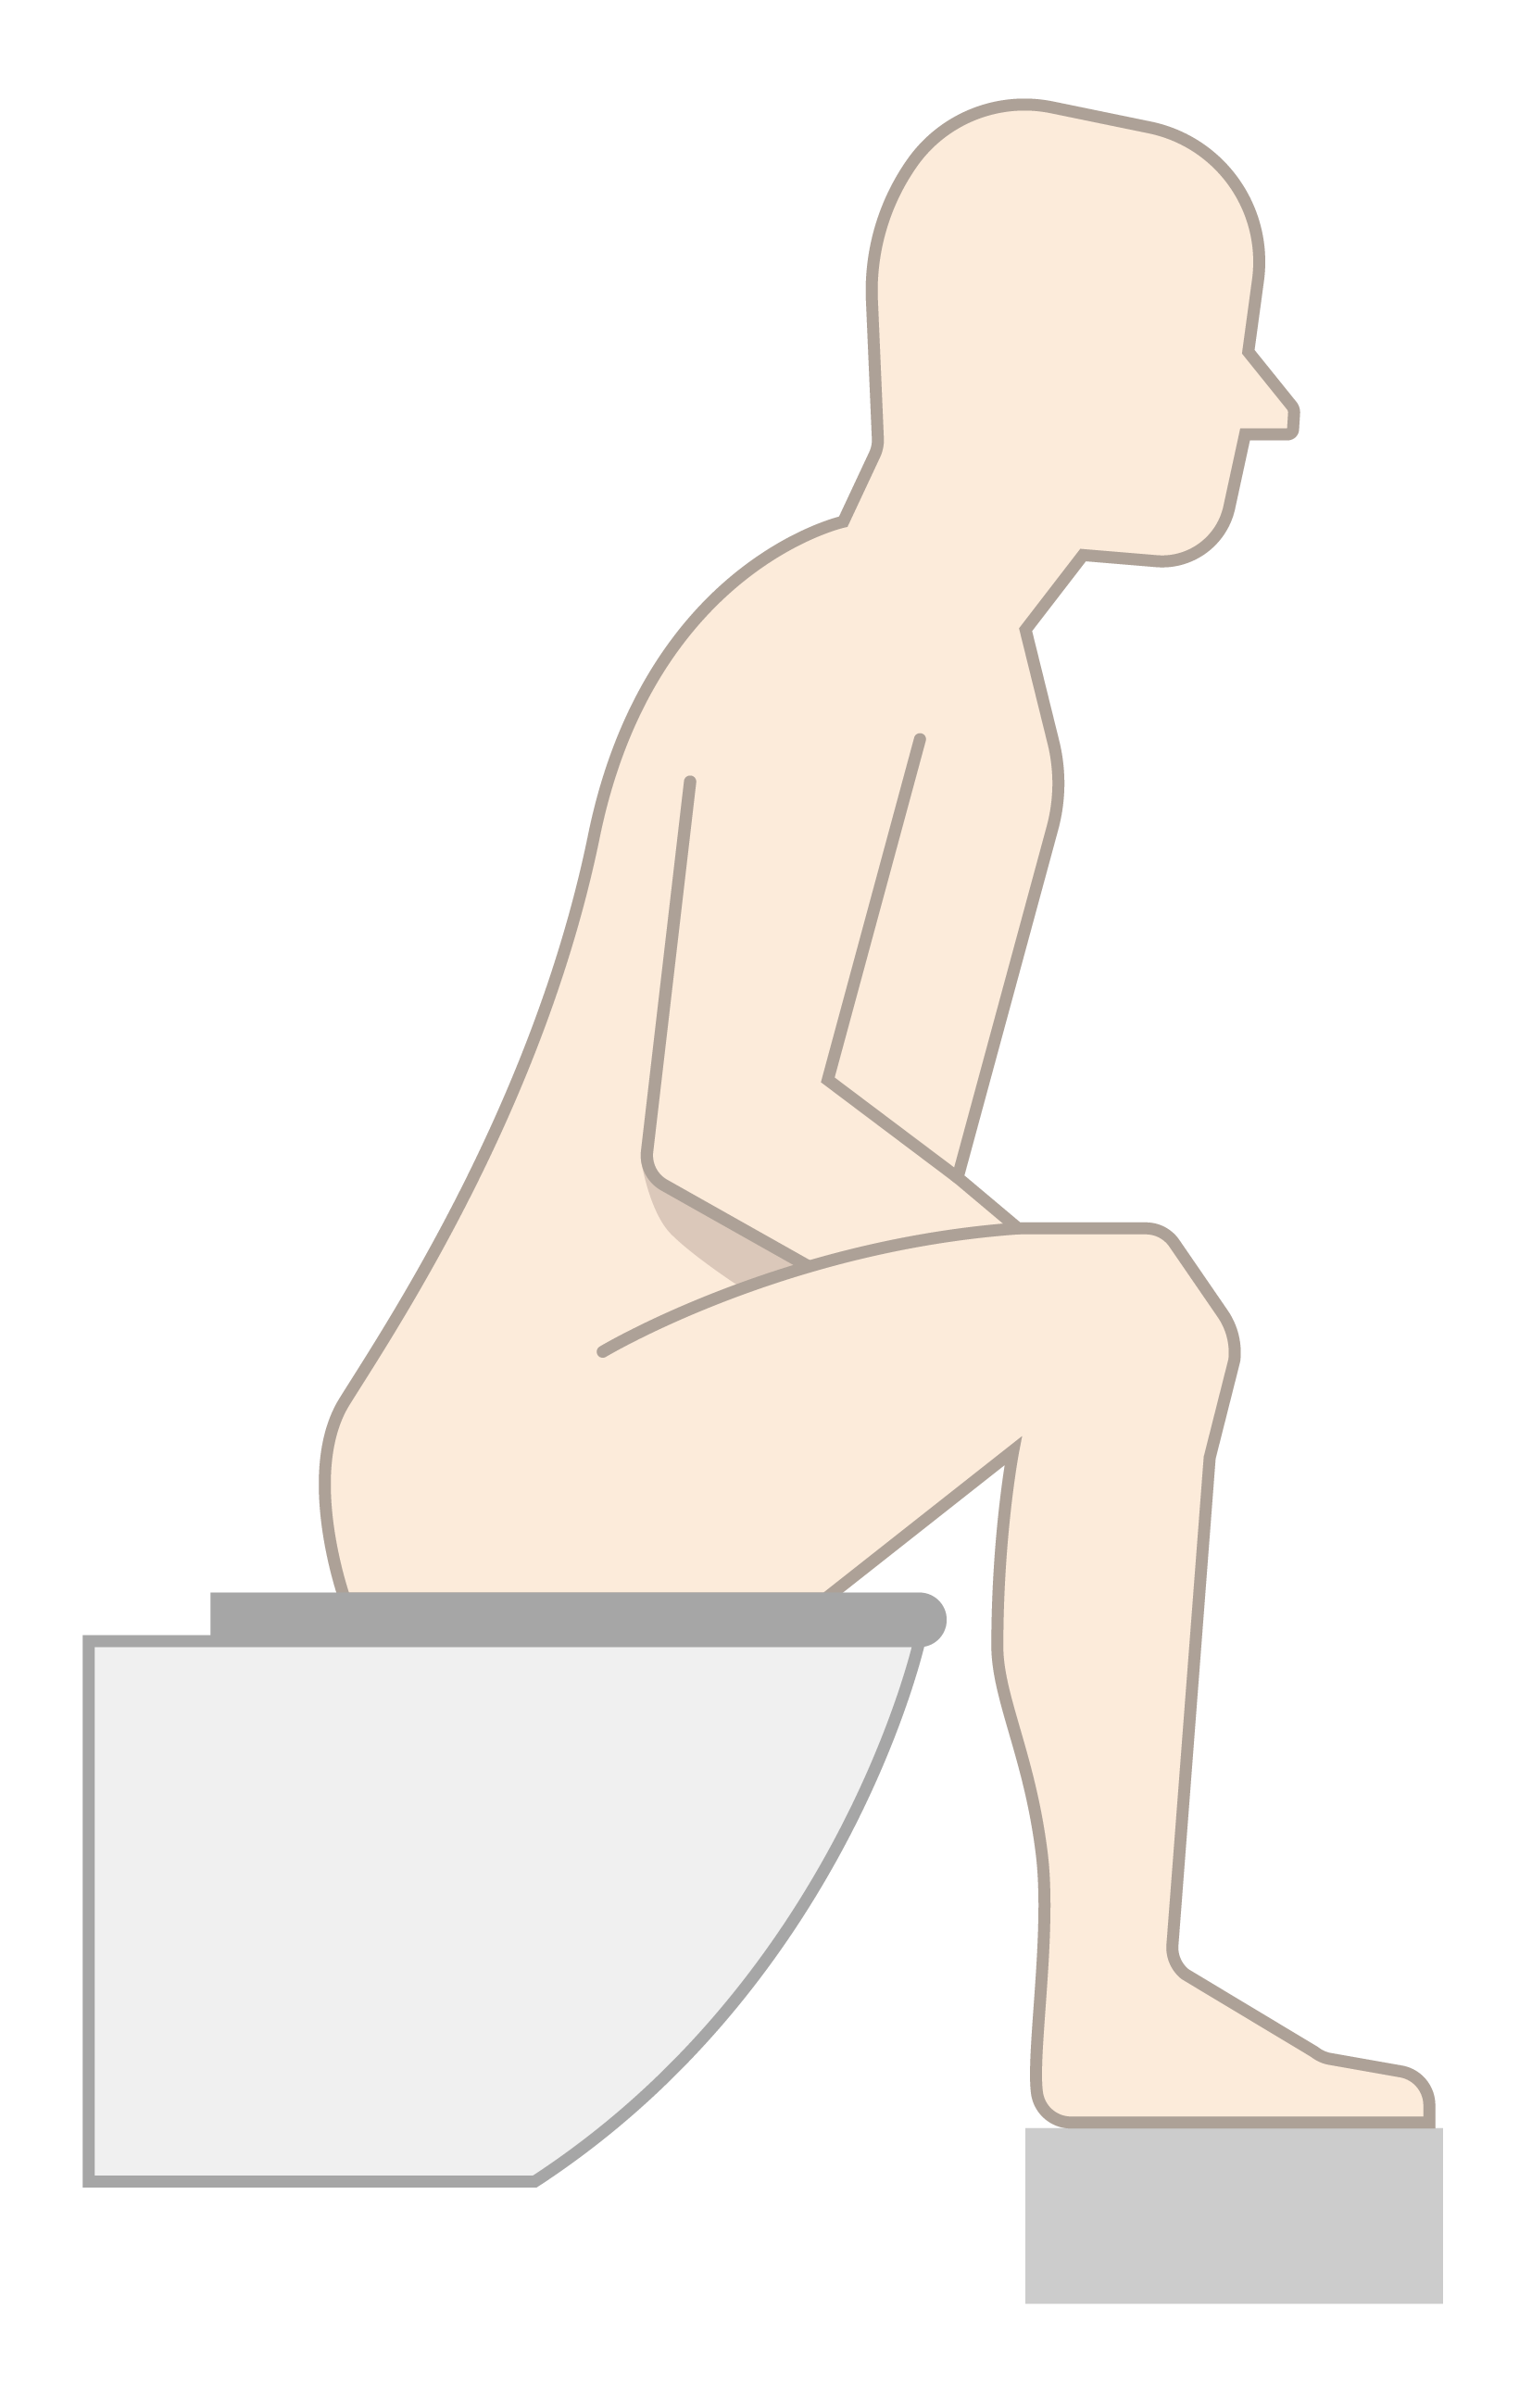 Optimal stilling: Let foroverbøjet på toilettet med lille fodskammel